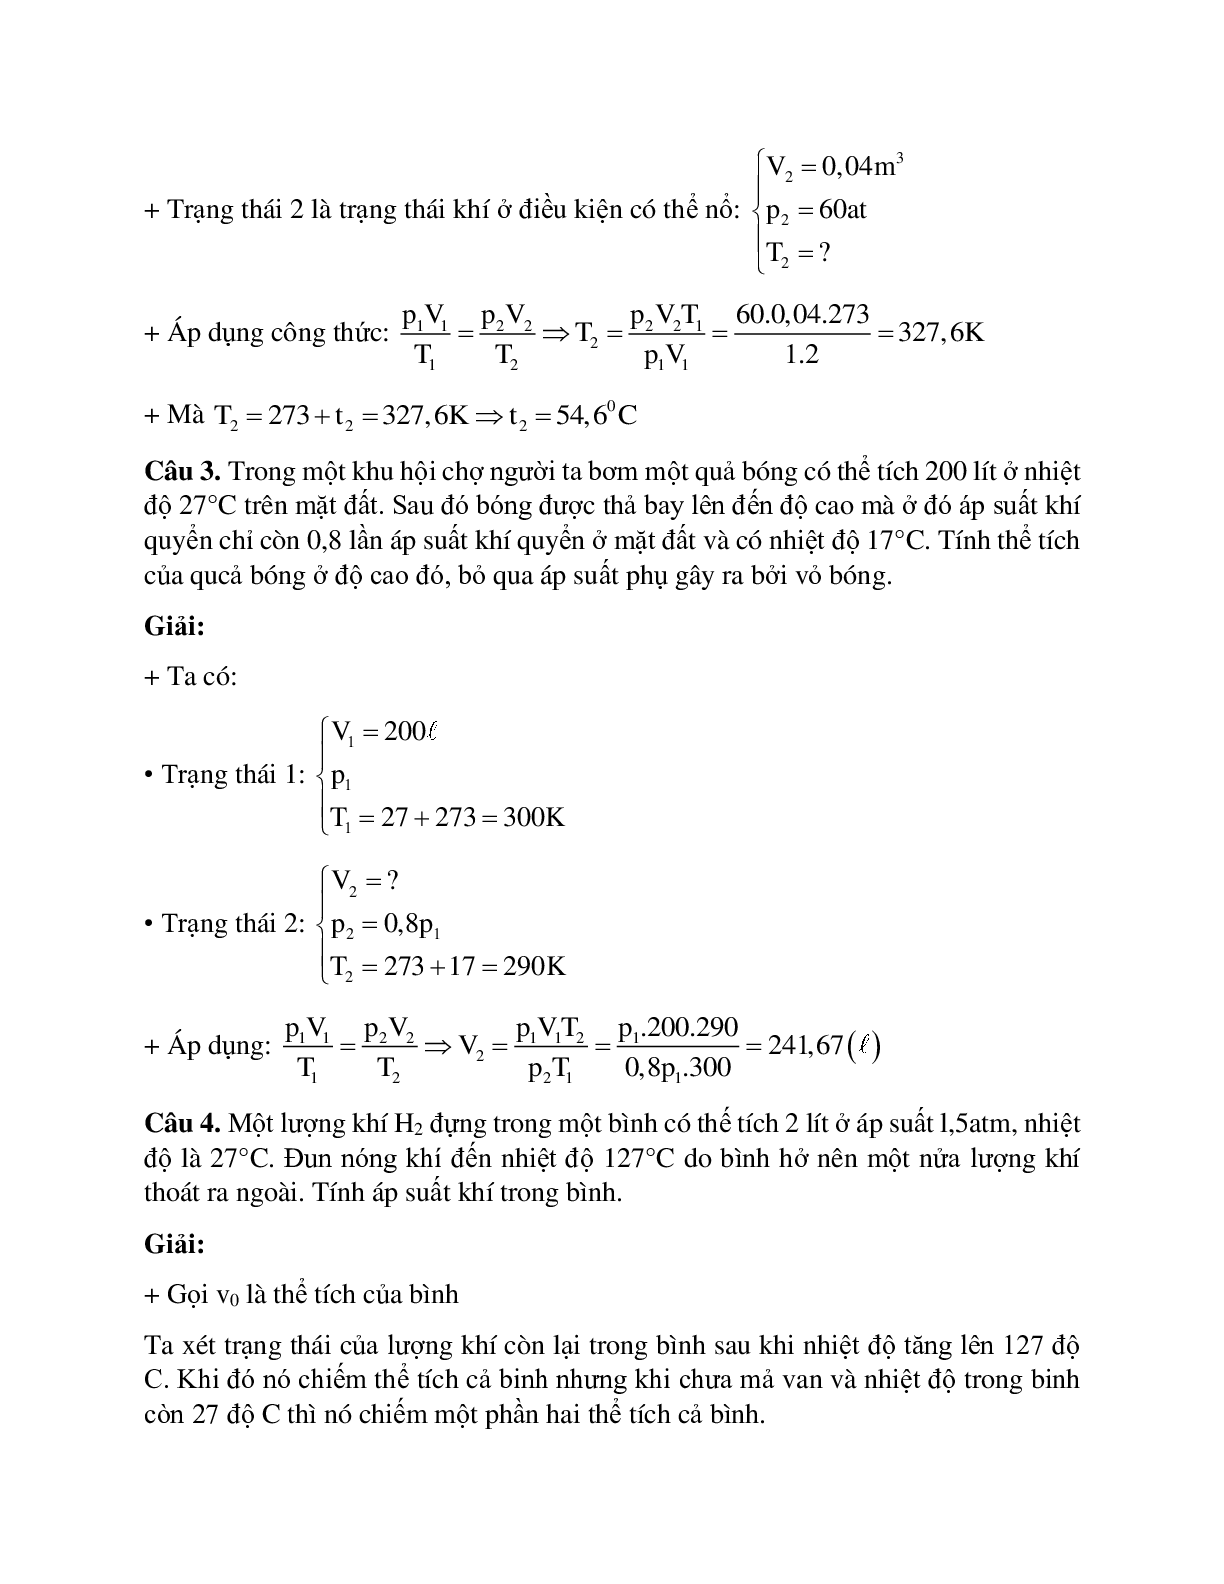 Bài tập về phương trình trạng thái khí lý tưởng có lời giải (trang 4)